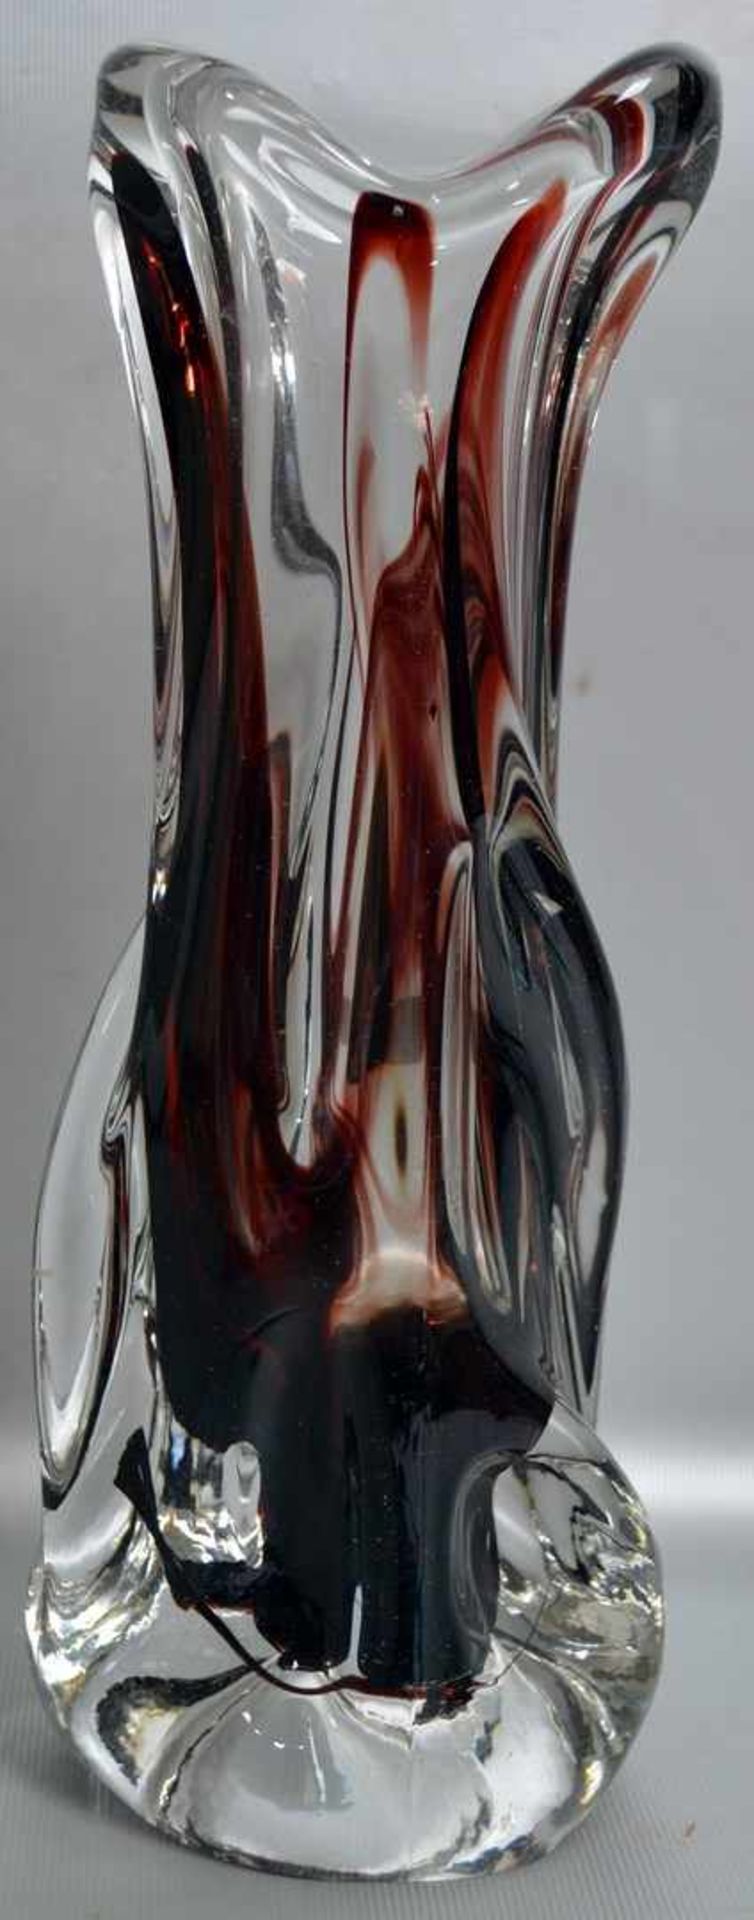 Vase farbl. Glas, mit roter Farbeinschmelzung, unregelmäßig gezogener Rand, H 26 cm, FM Murano